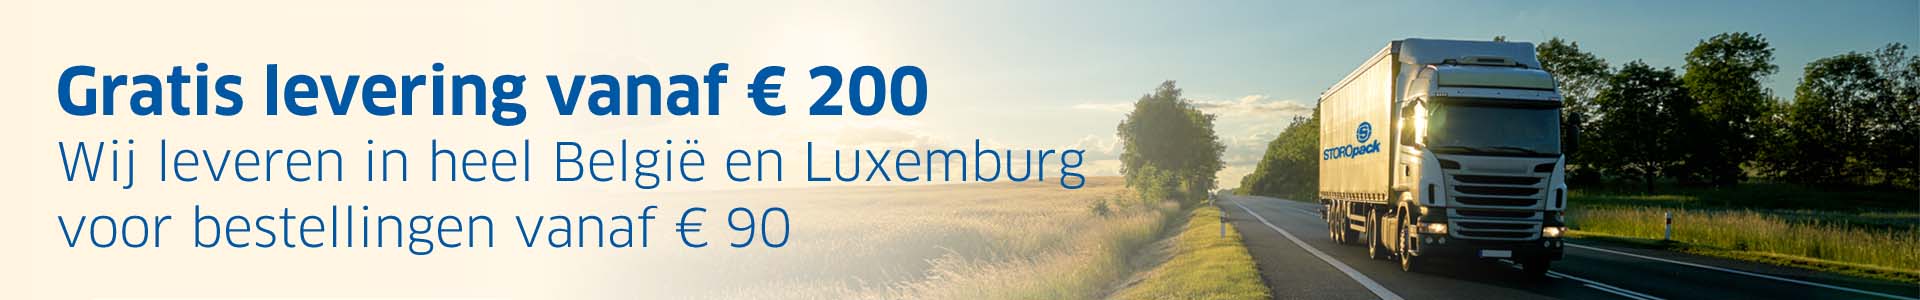 Gratis levering vanaf € 180. Wij leveren in heel België en Luxemburg voor bestellingen vanaf € 80.